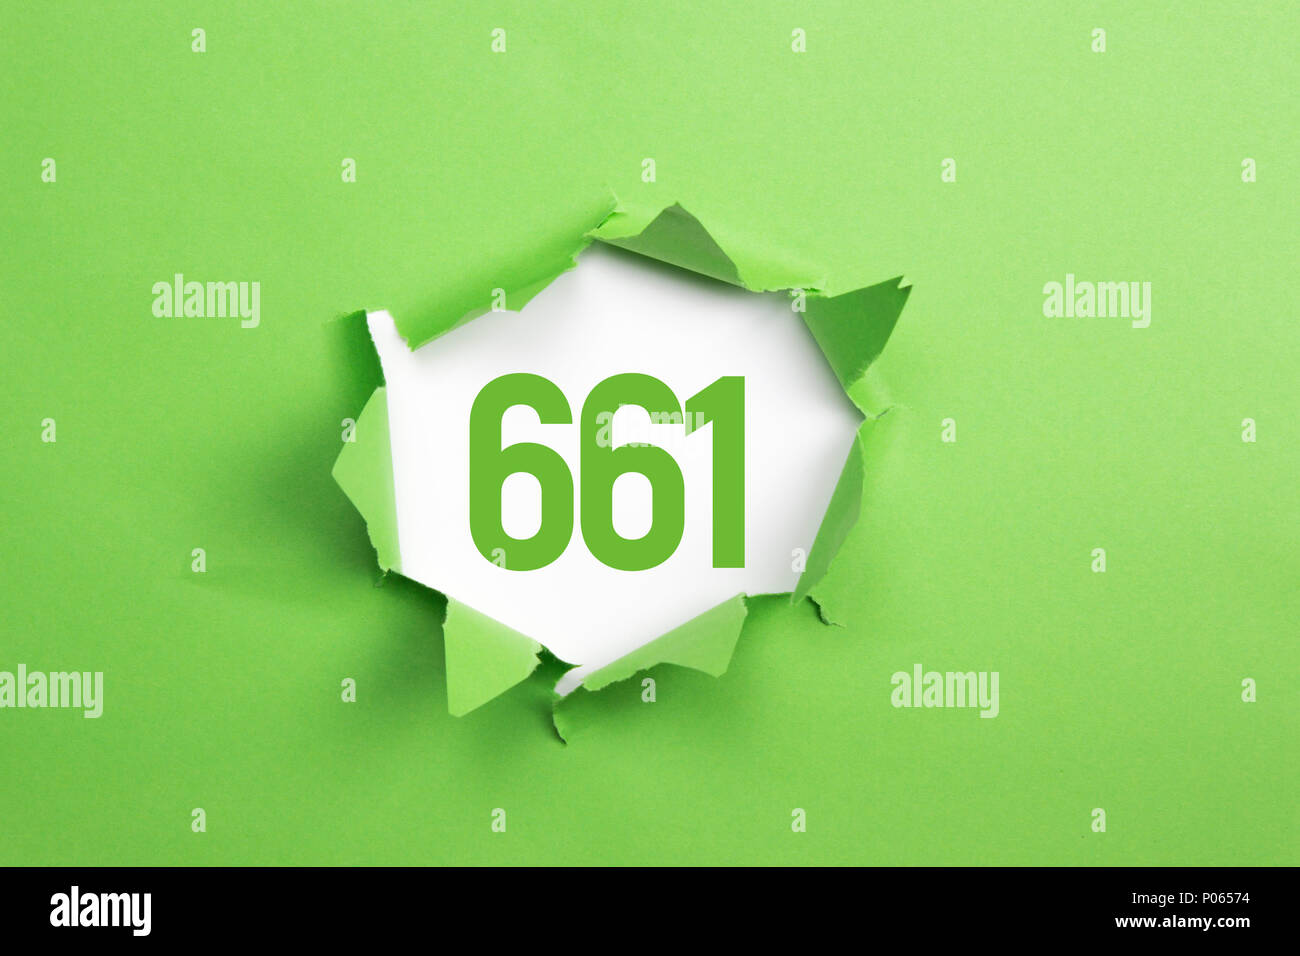 Grüne Nummer 661 auf grünem Papier Hintergrund Stockfoto